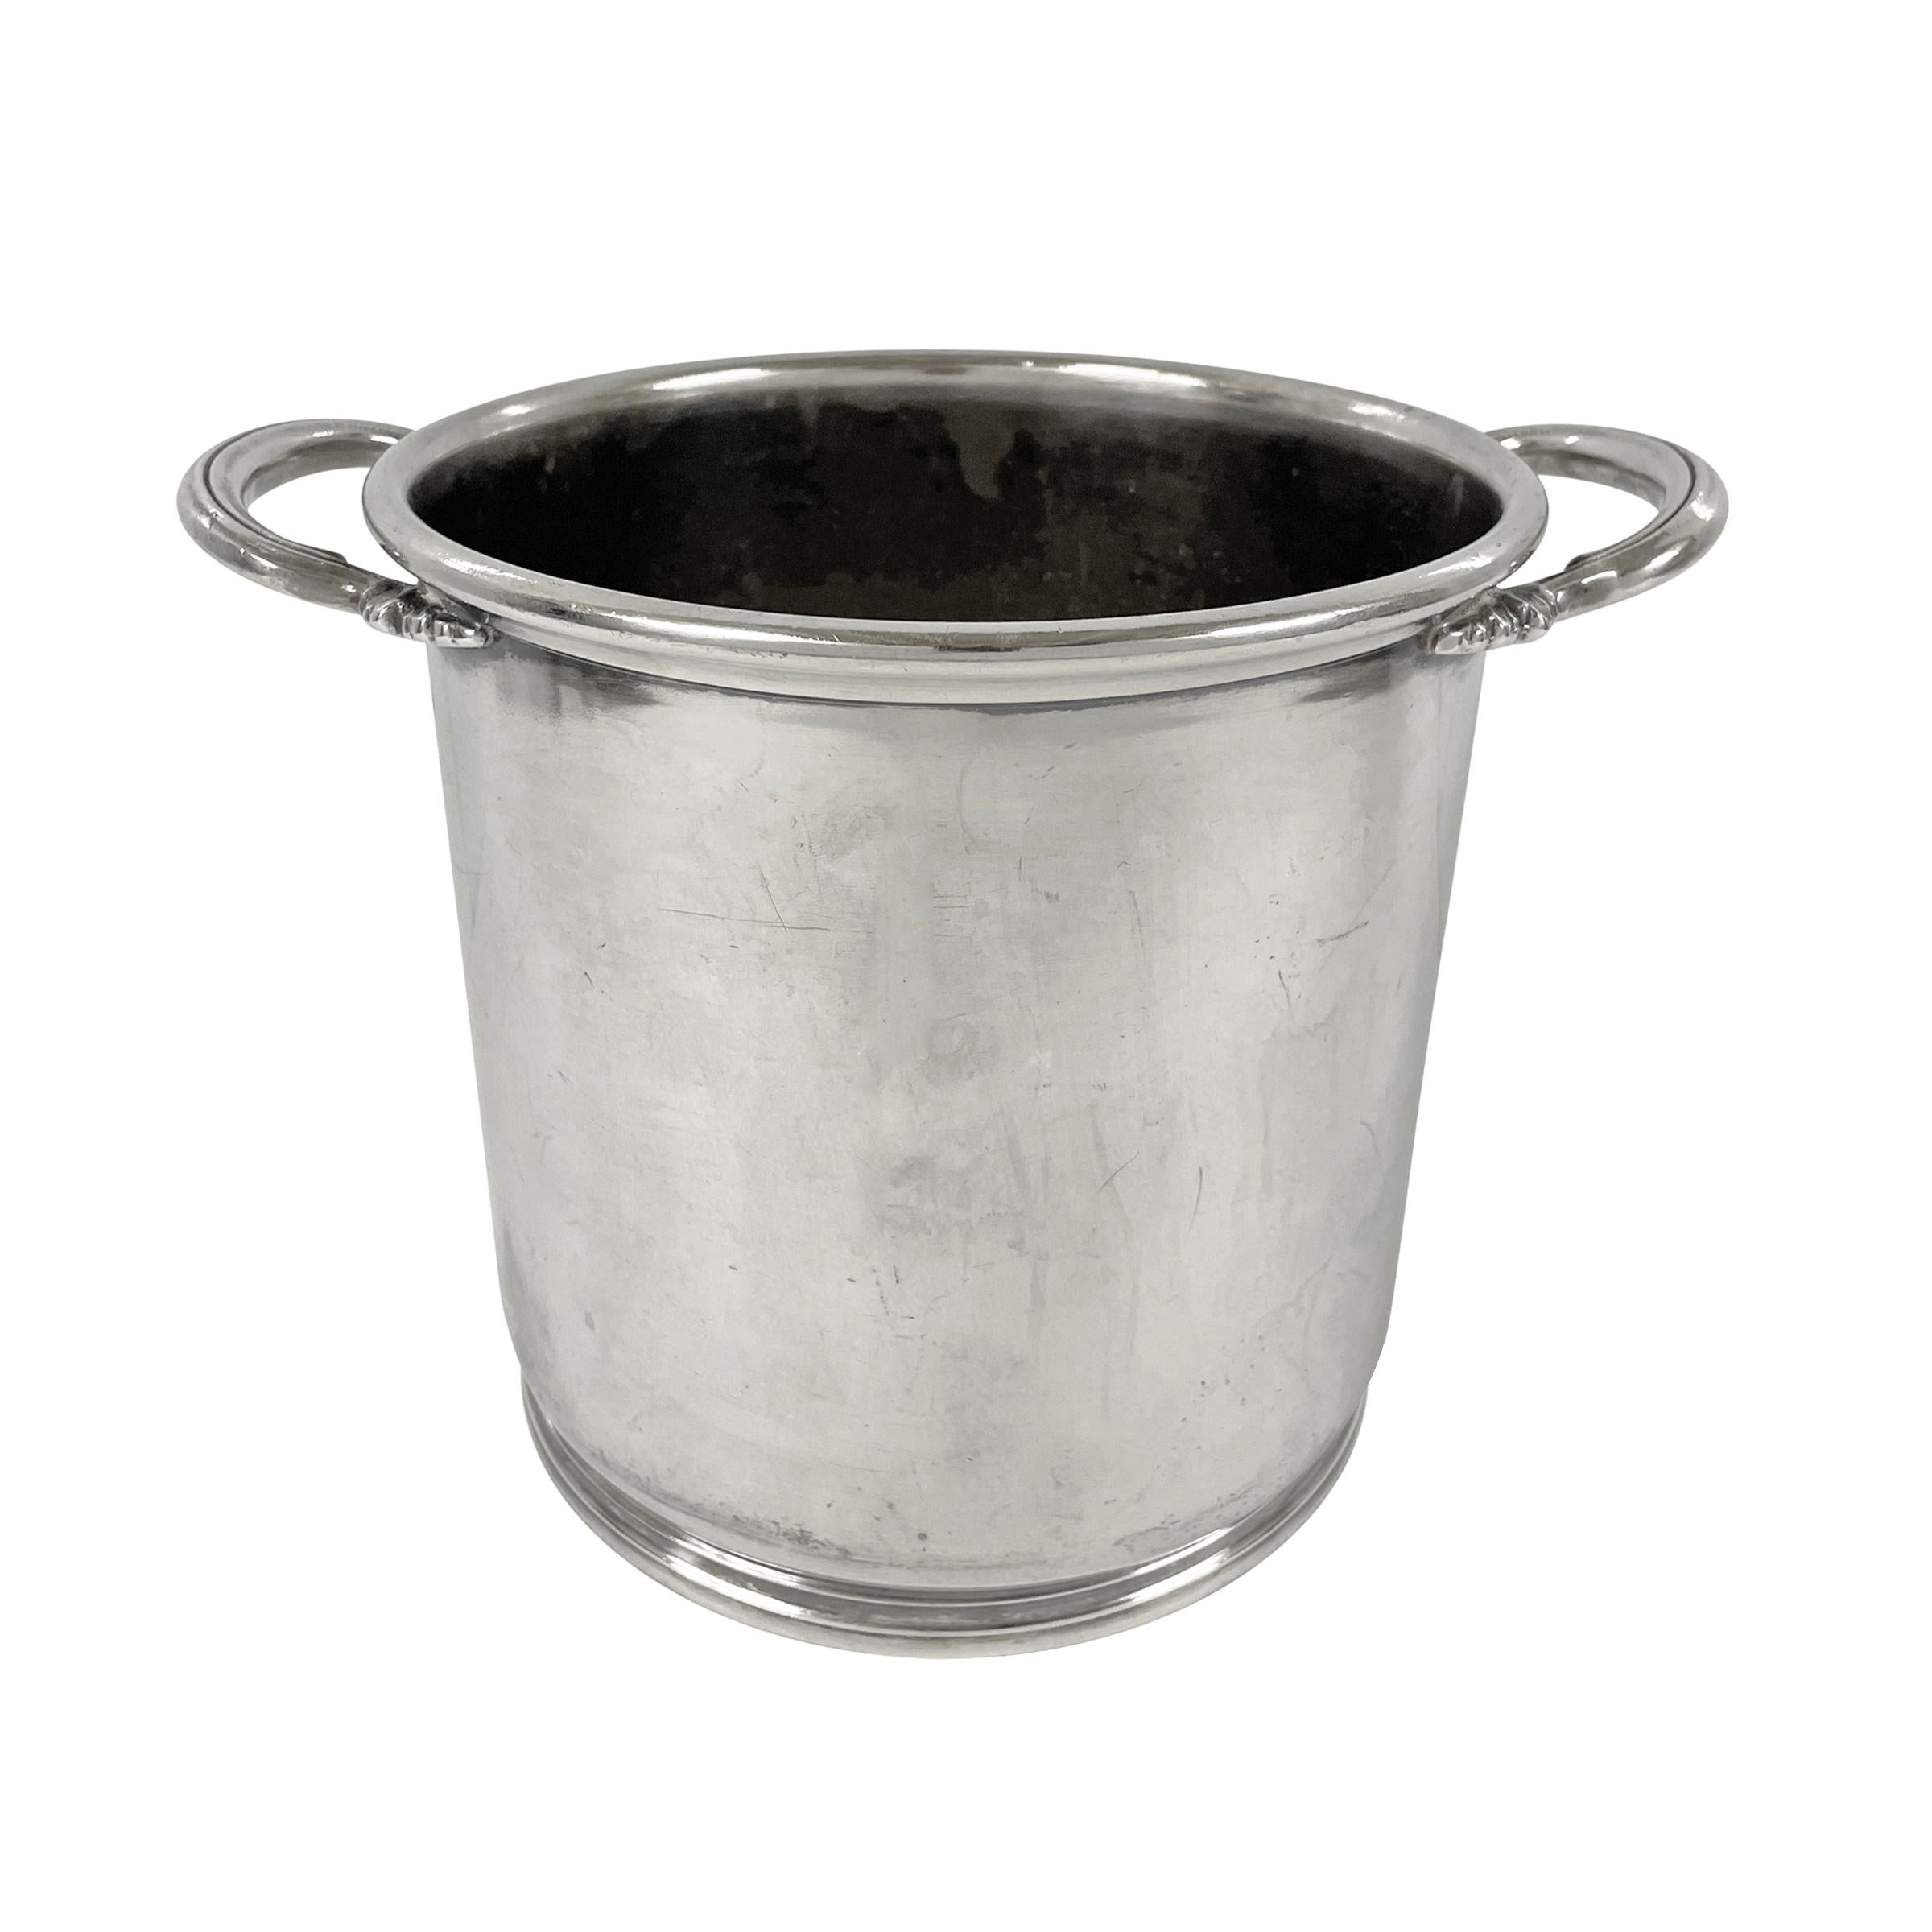 mirro medallion ice bucket